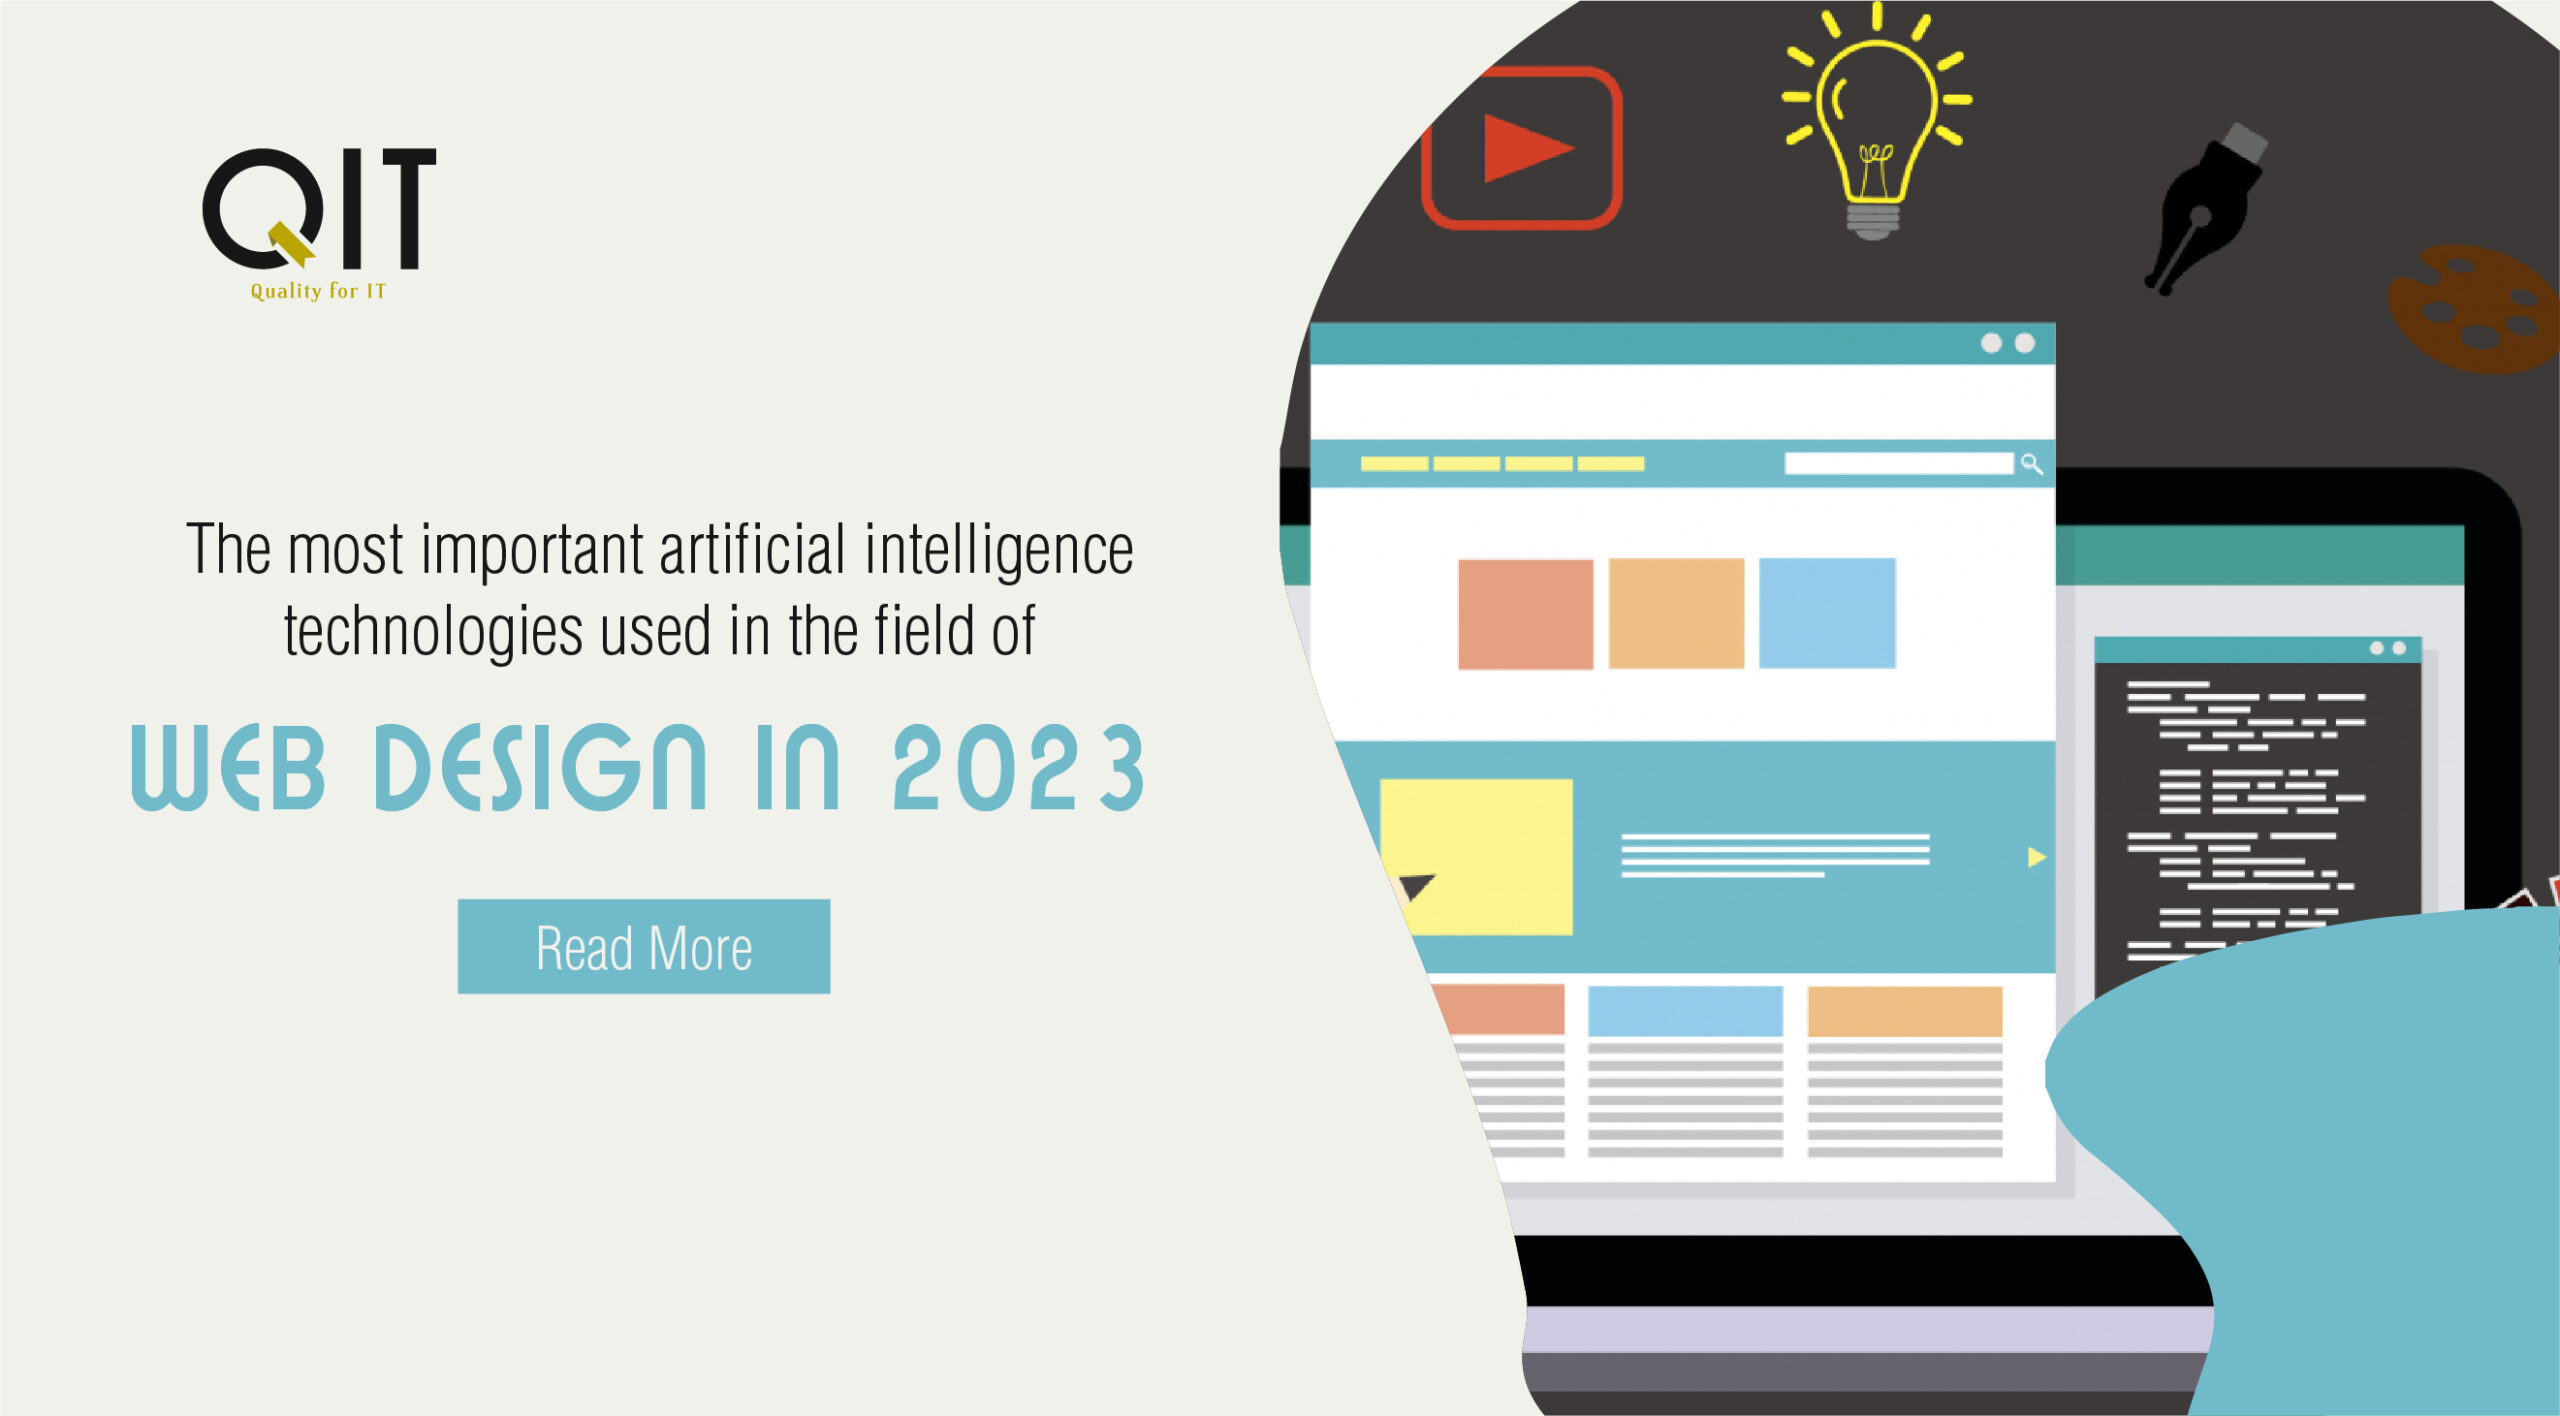 أهم تقنيّات الذّكاء الاصطناعي المستخدمة في مجال تصميم الويب في عام 2023